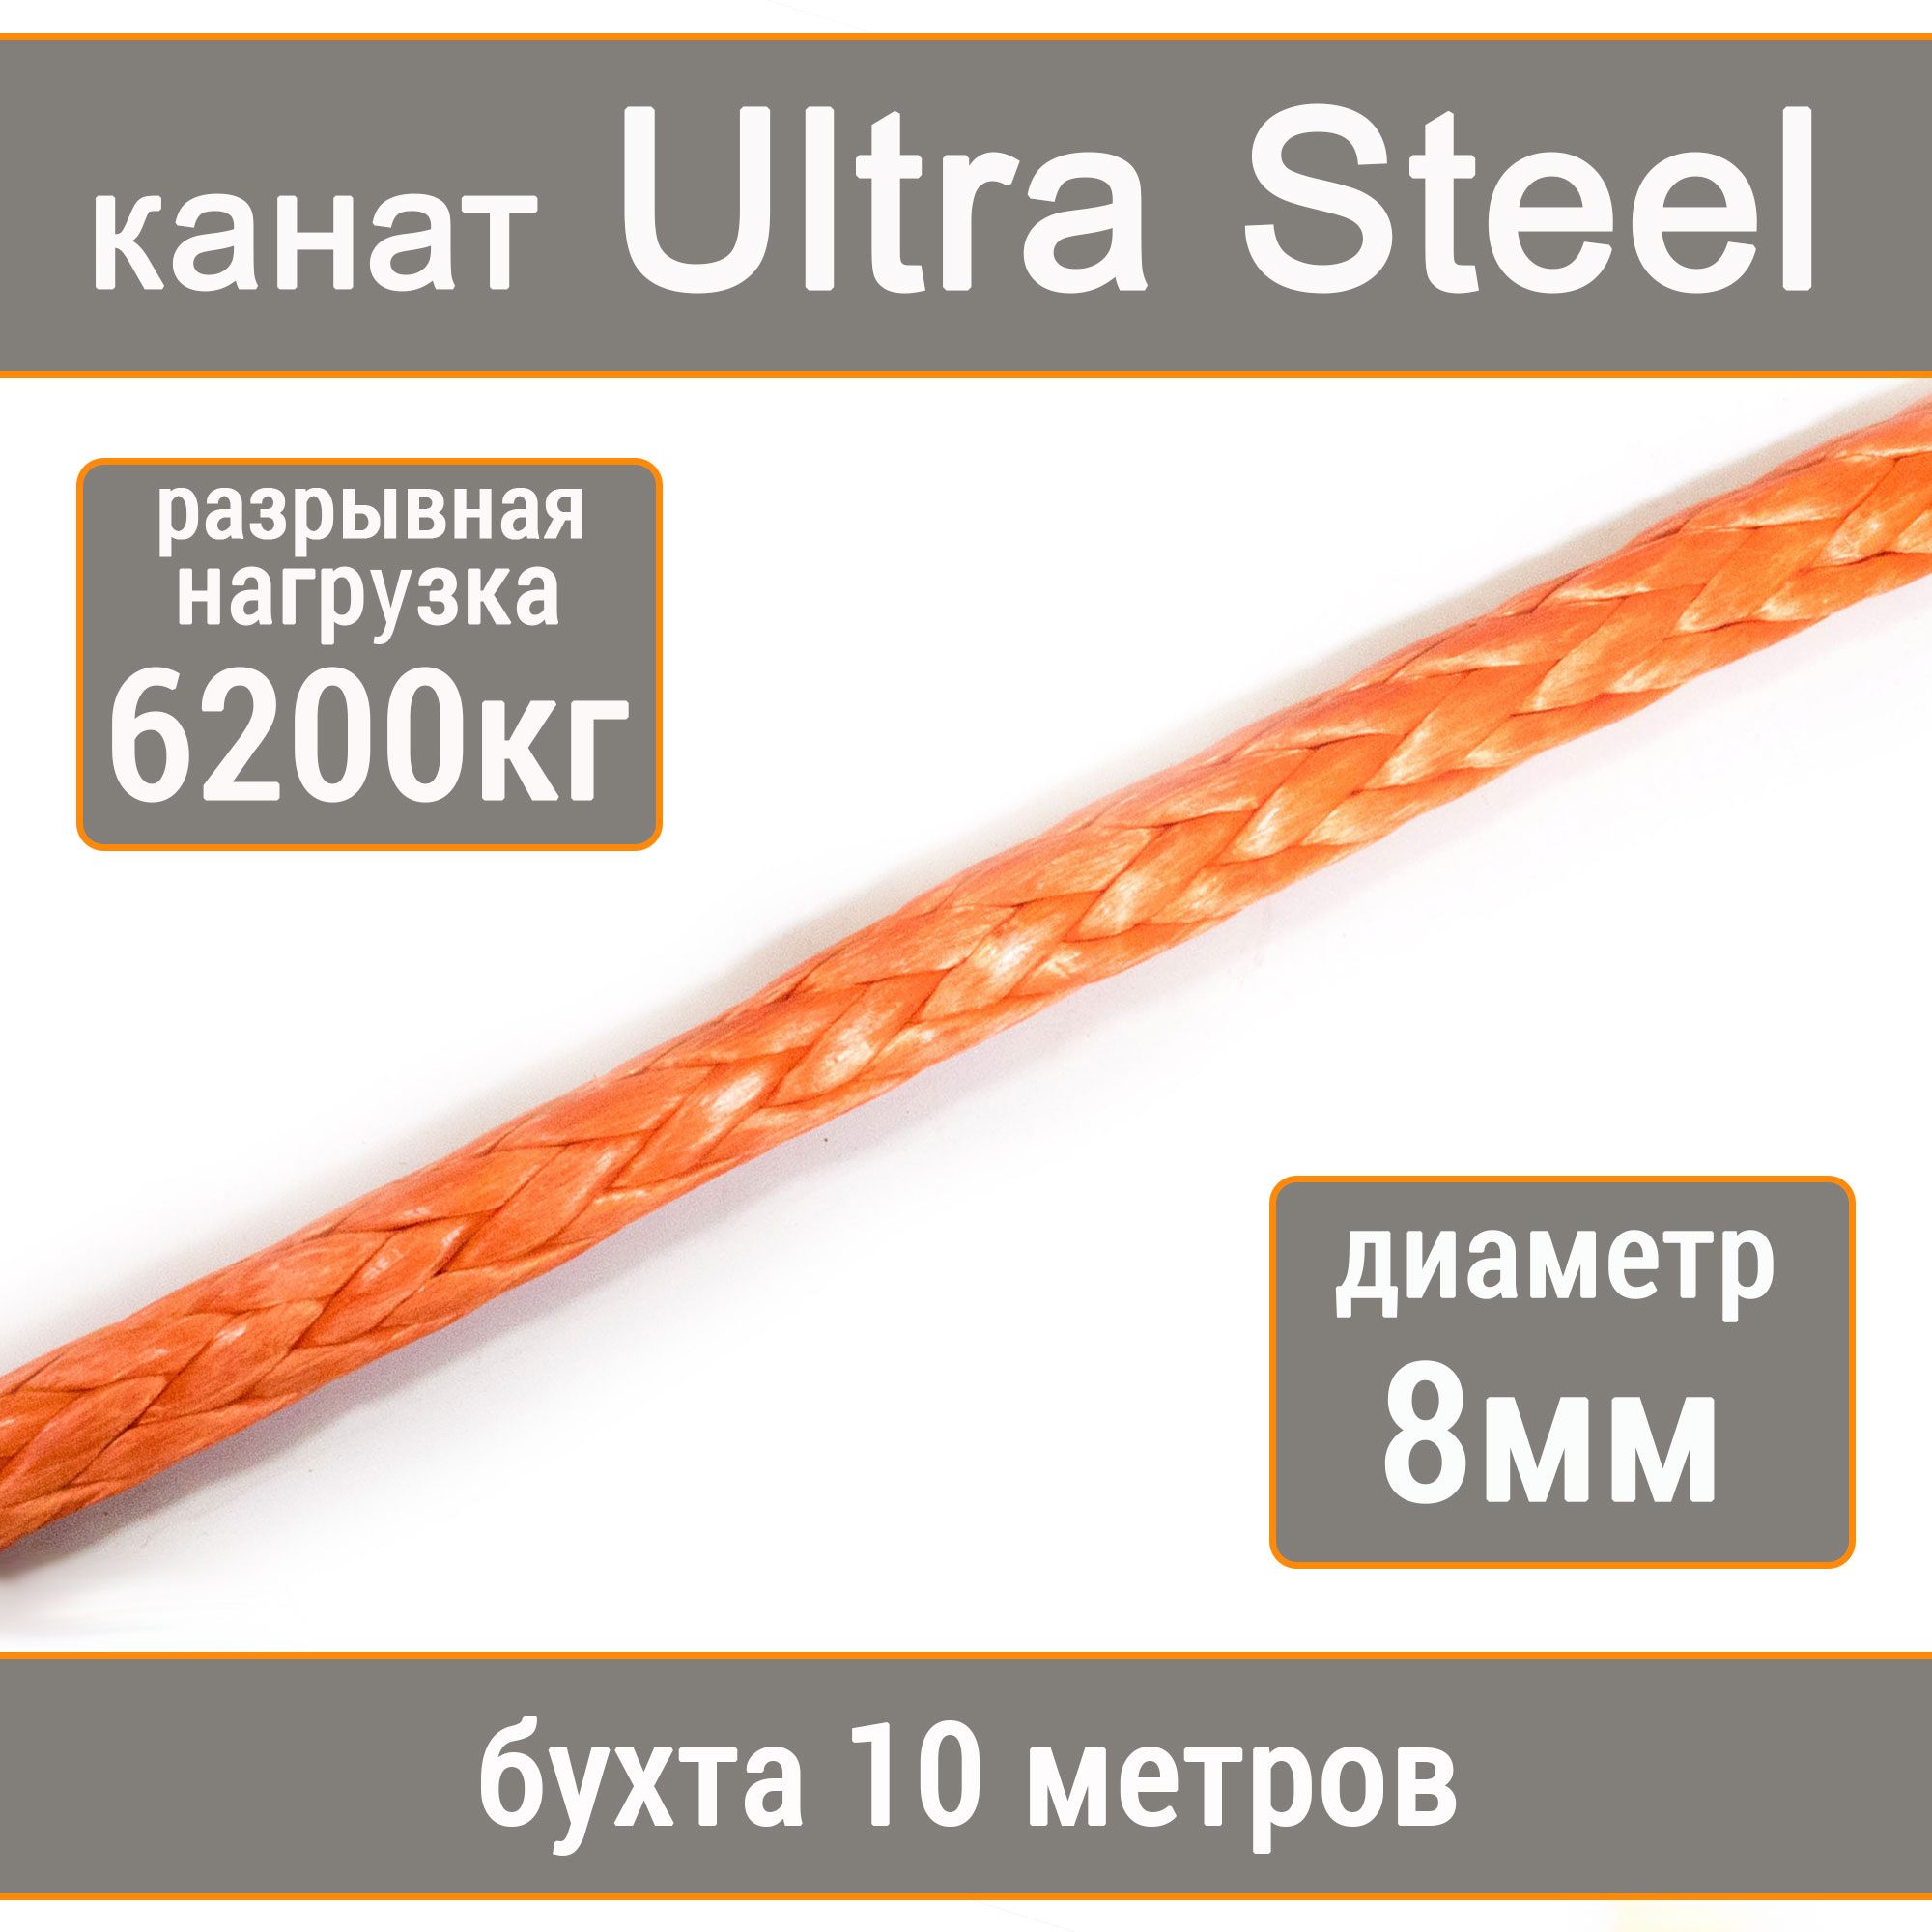 Высокопрочный синтетический канат UTX Ultra Steel 8мм р.н.6200кг, 007654321-108 пылесборник синтетический д пылесоса daewooтип du105 4 шт topperr dw50 1403